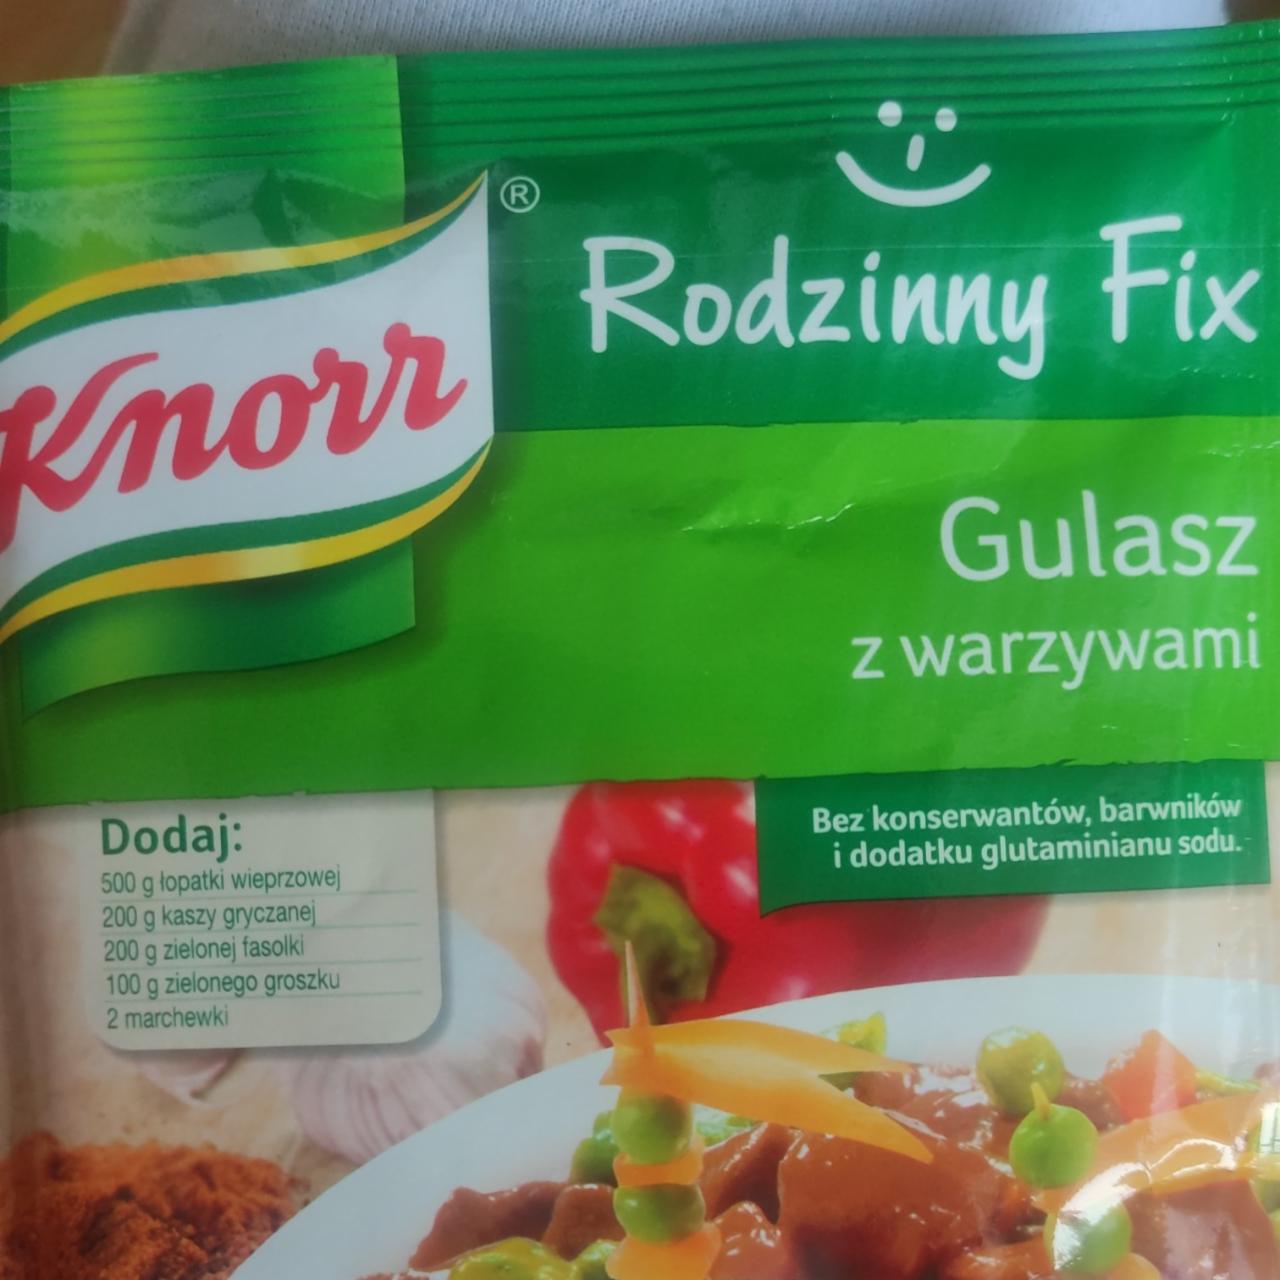 Fotografie - Rodzinny Fix Gulasz z warzywami Knorr